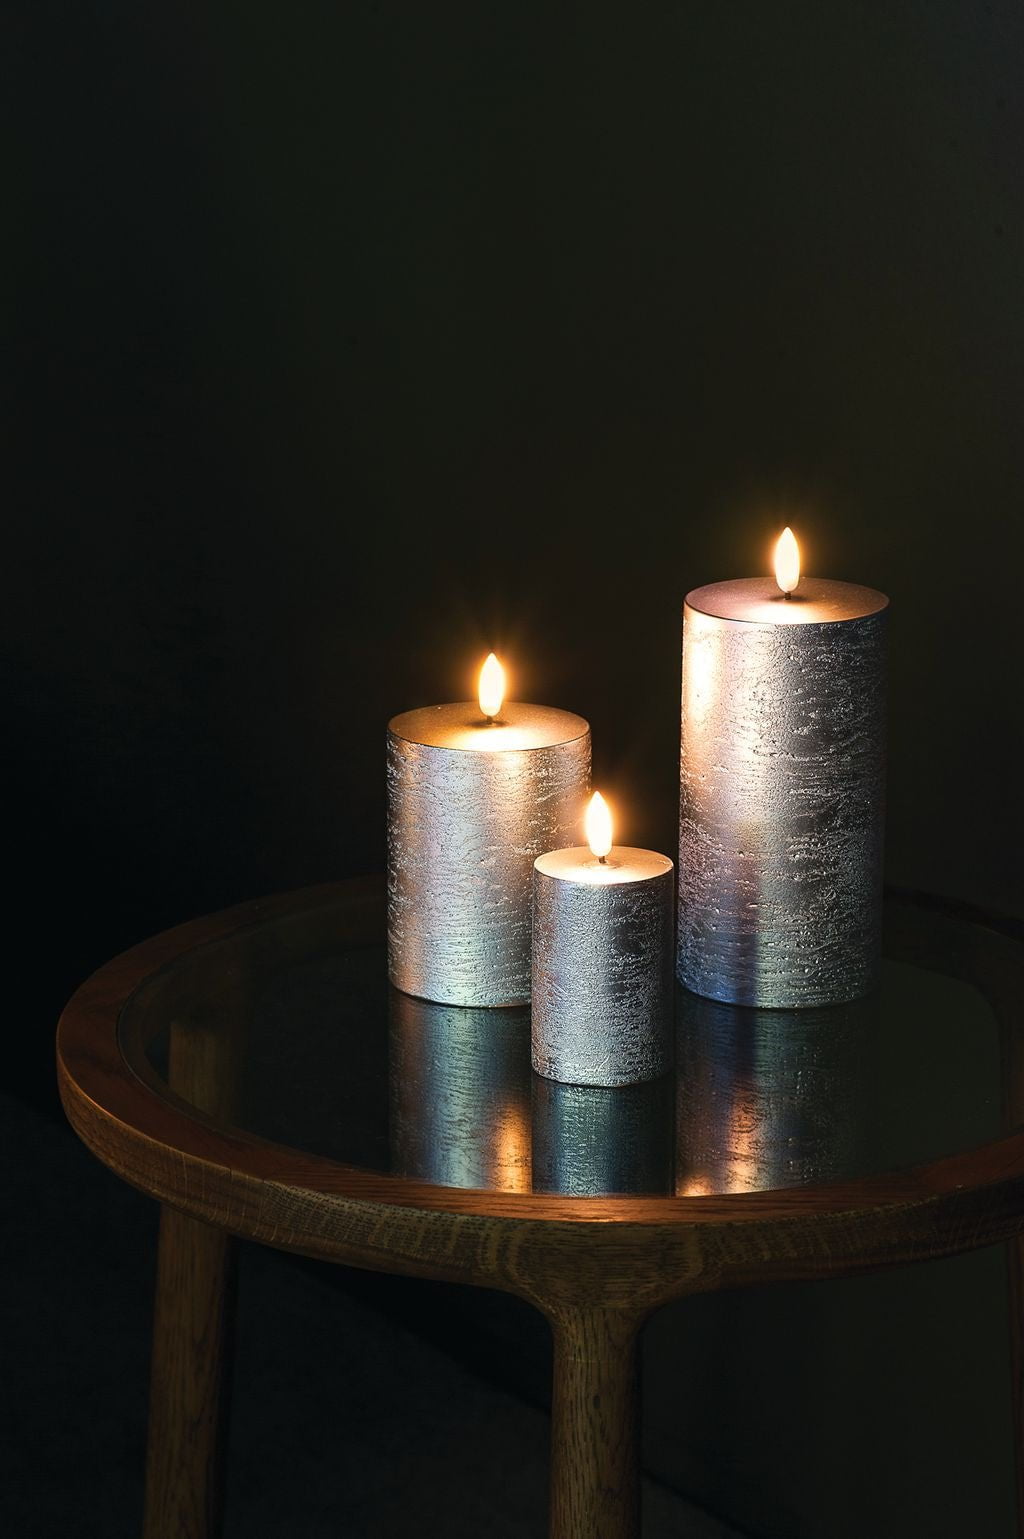 Oświetlenie Uyuni LED Filar Candle 3 D płomień Øx H 5,8x15,2 cm, metaliczne srebro